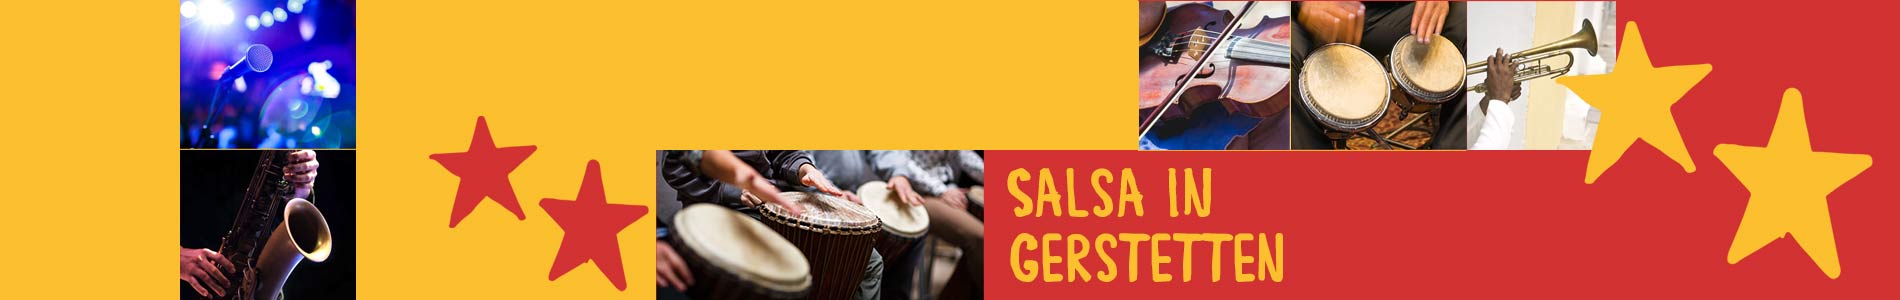 Salsa in Gerstetten – Salsa lernen und tanzen, Tanzkurse, Partys, Veranstaltungen